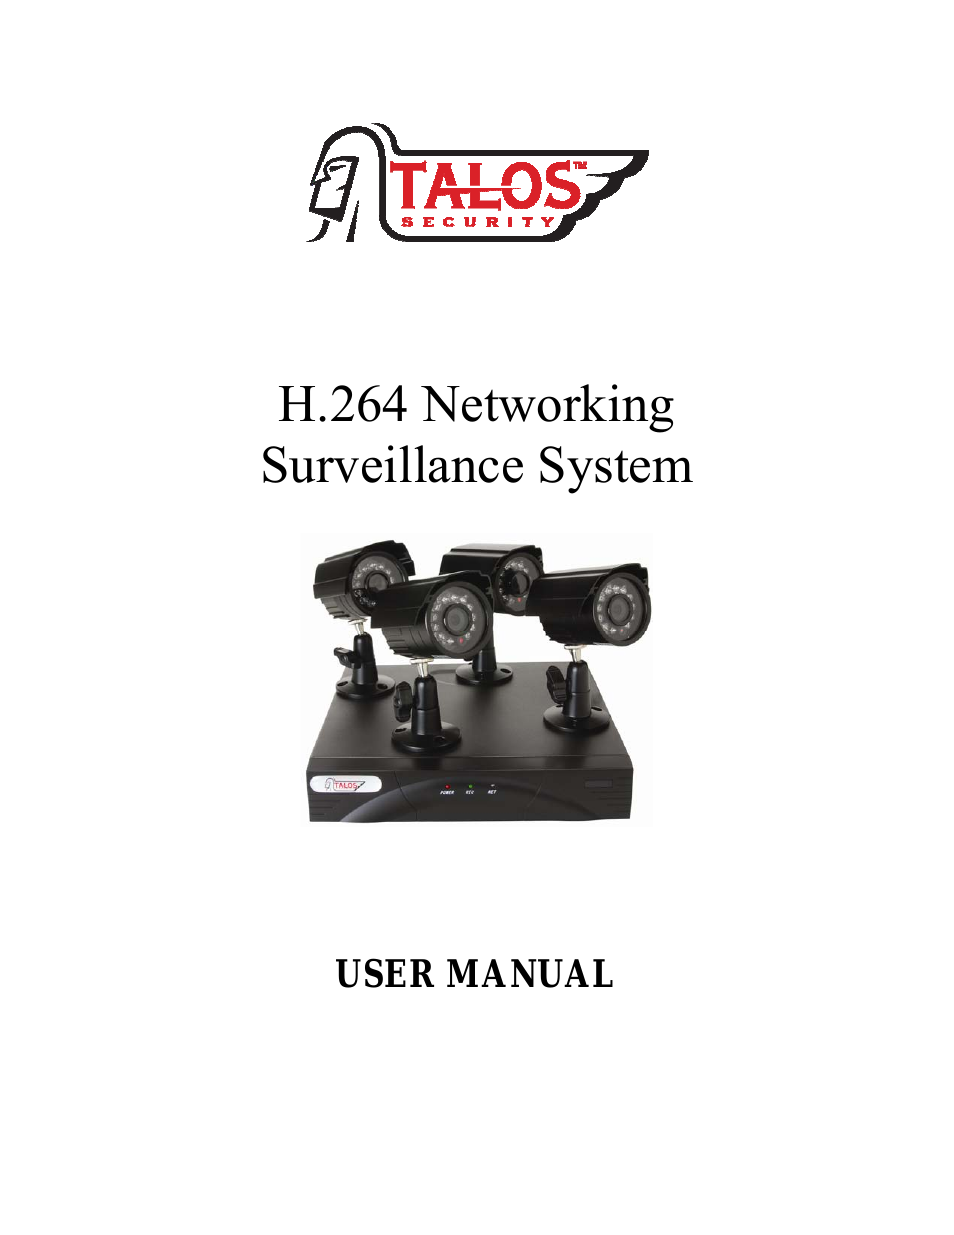 DK1400 Series Surveillance Kit User Manual